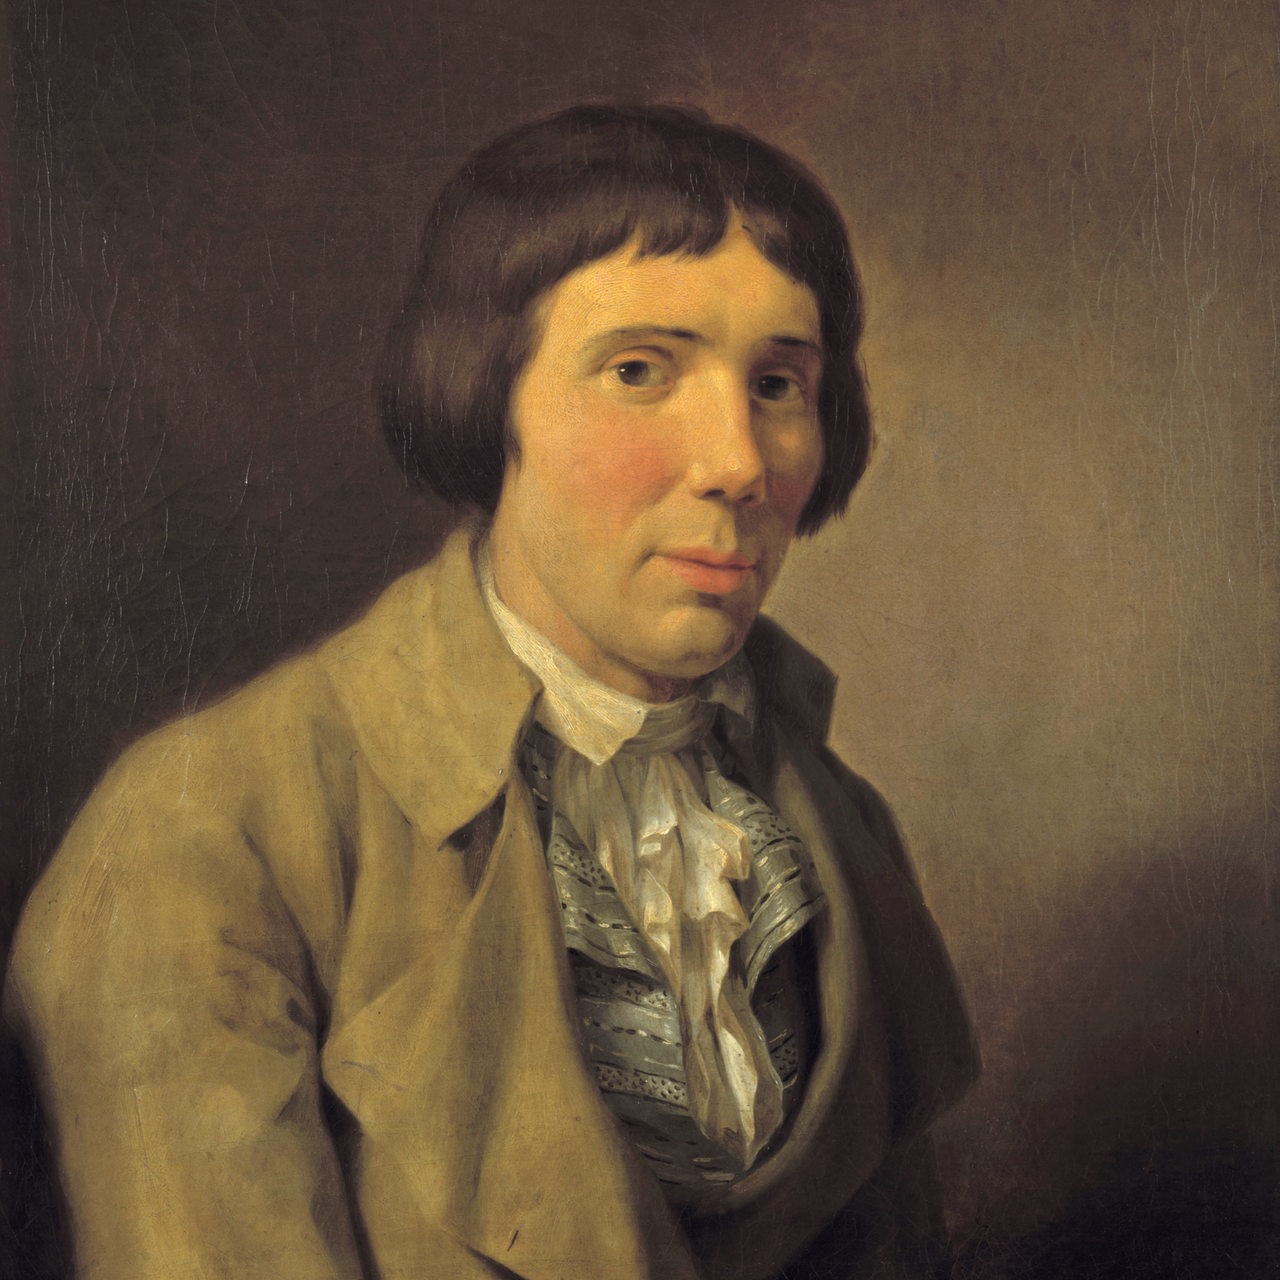 Gemälde von Friedrich Rehberg zeigt ein Porträt des Schriftstellers Karl Philipp Moritz. Berlin, 26.07.1793